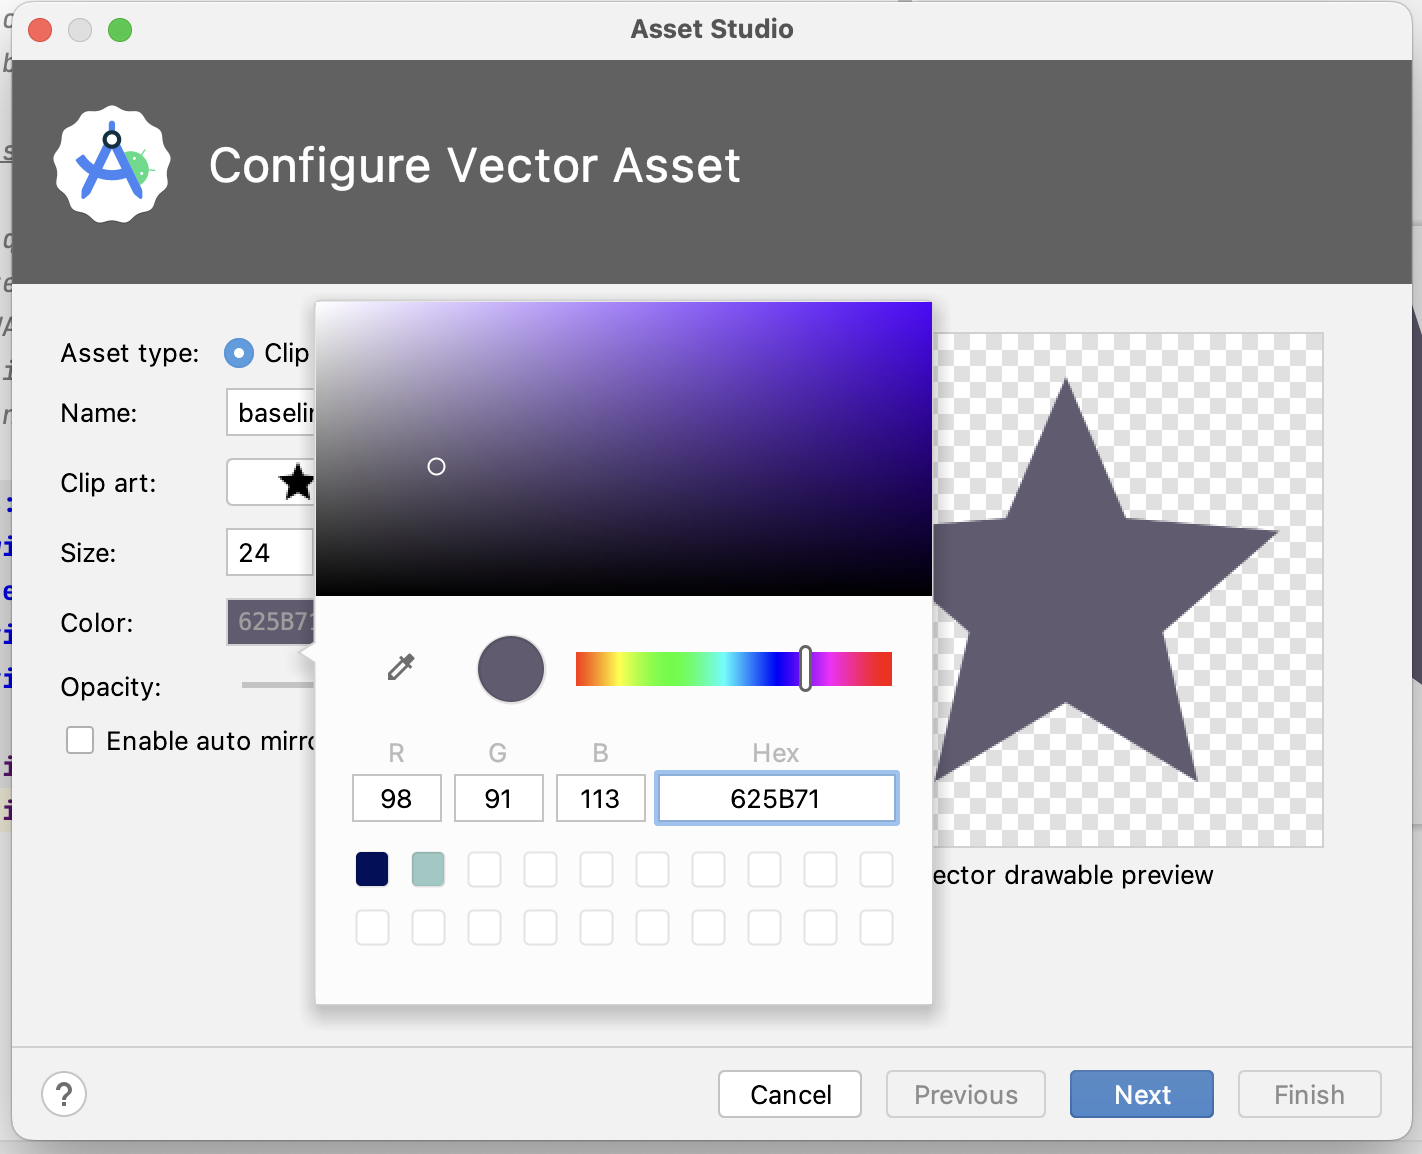 Caixa de diálogo do Asset Studio com a configuração de recursos de vetor e cor 